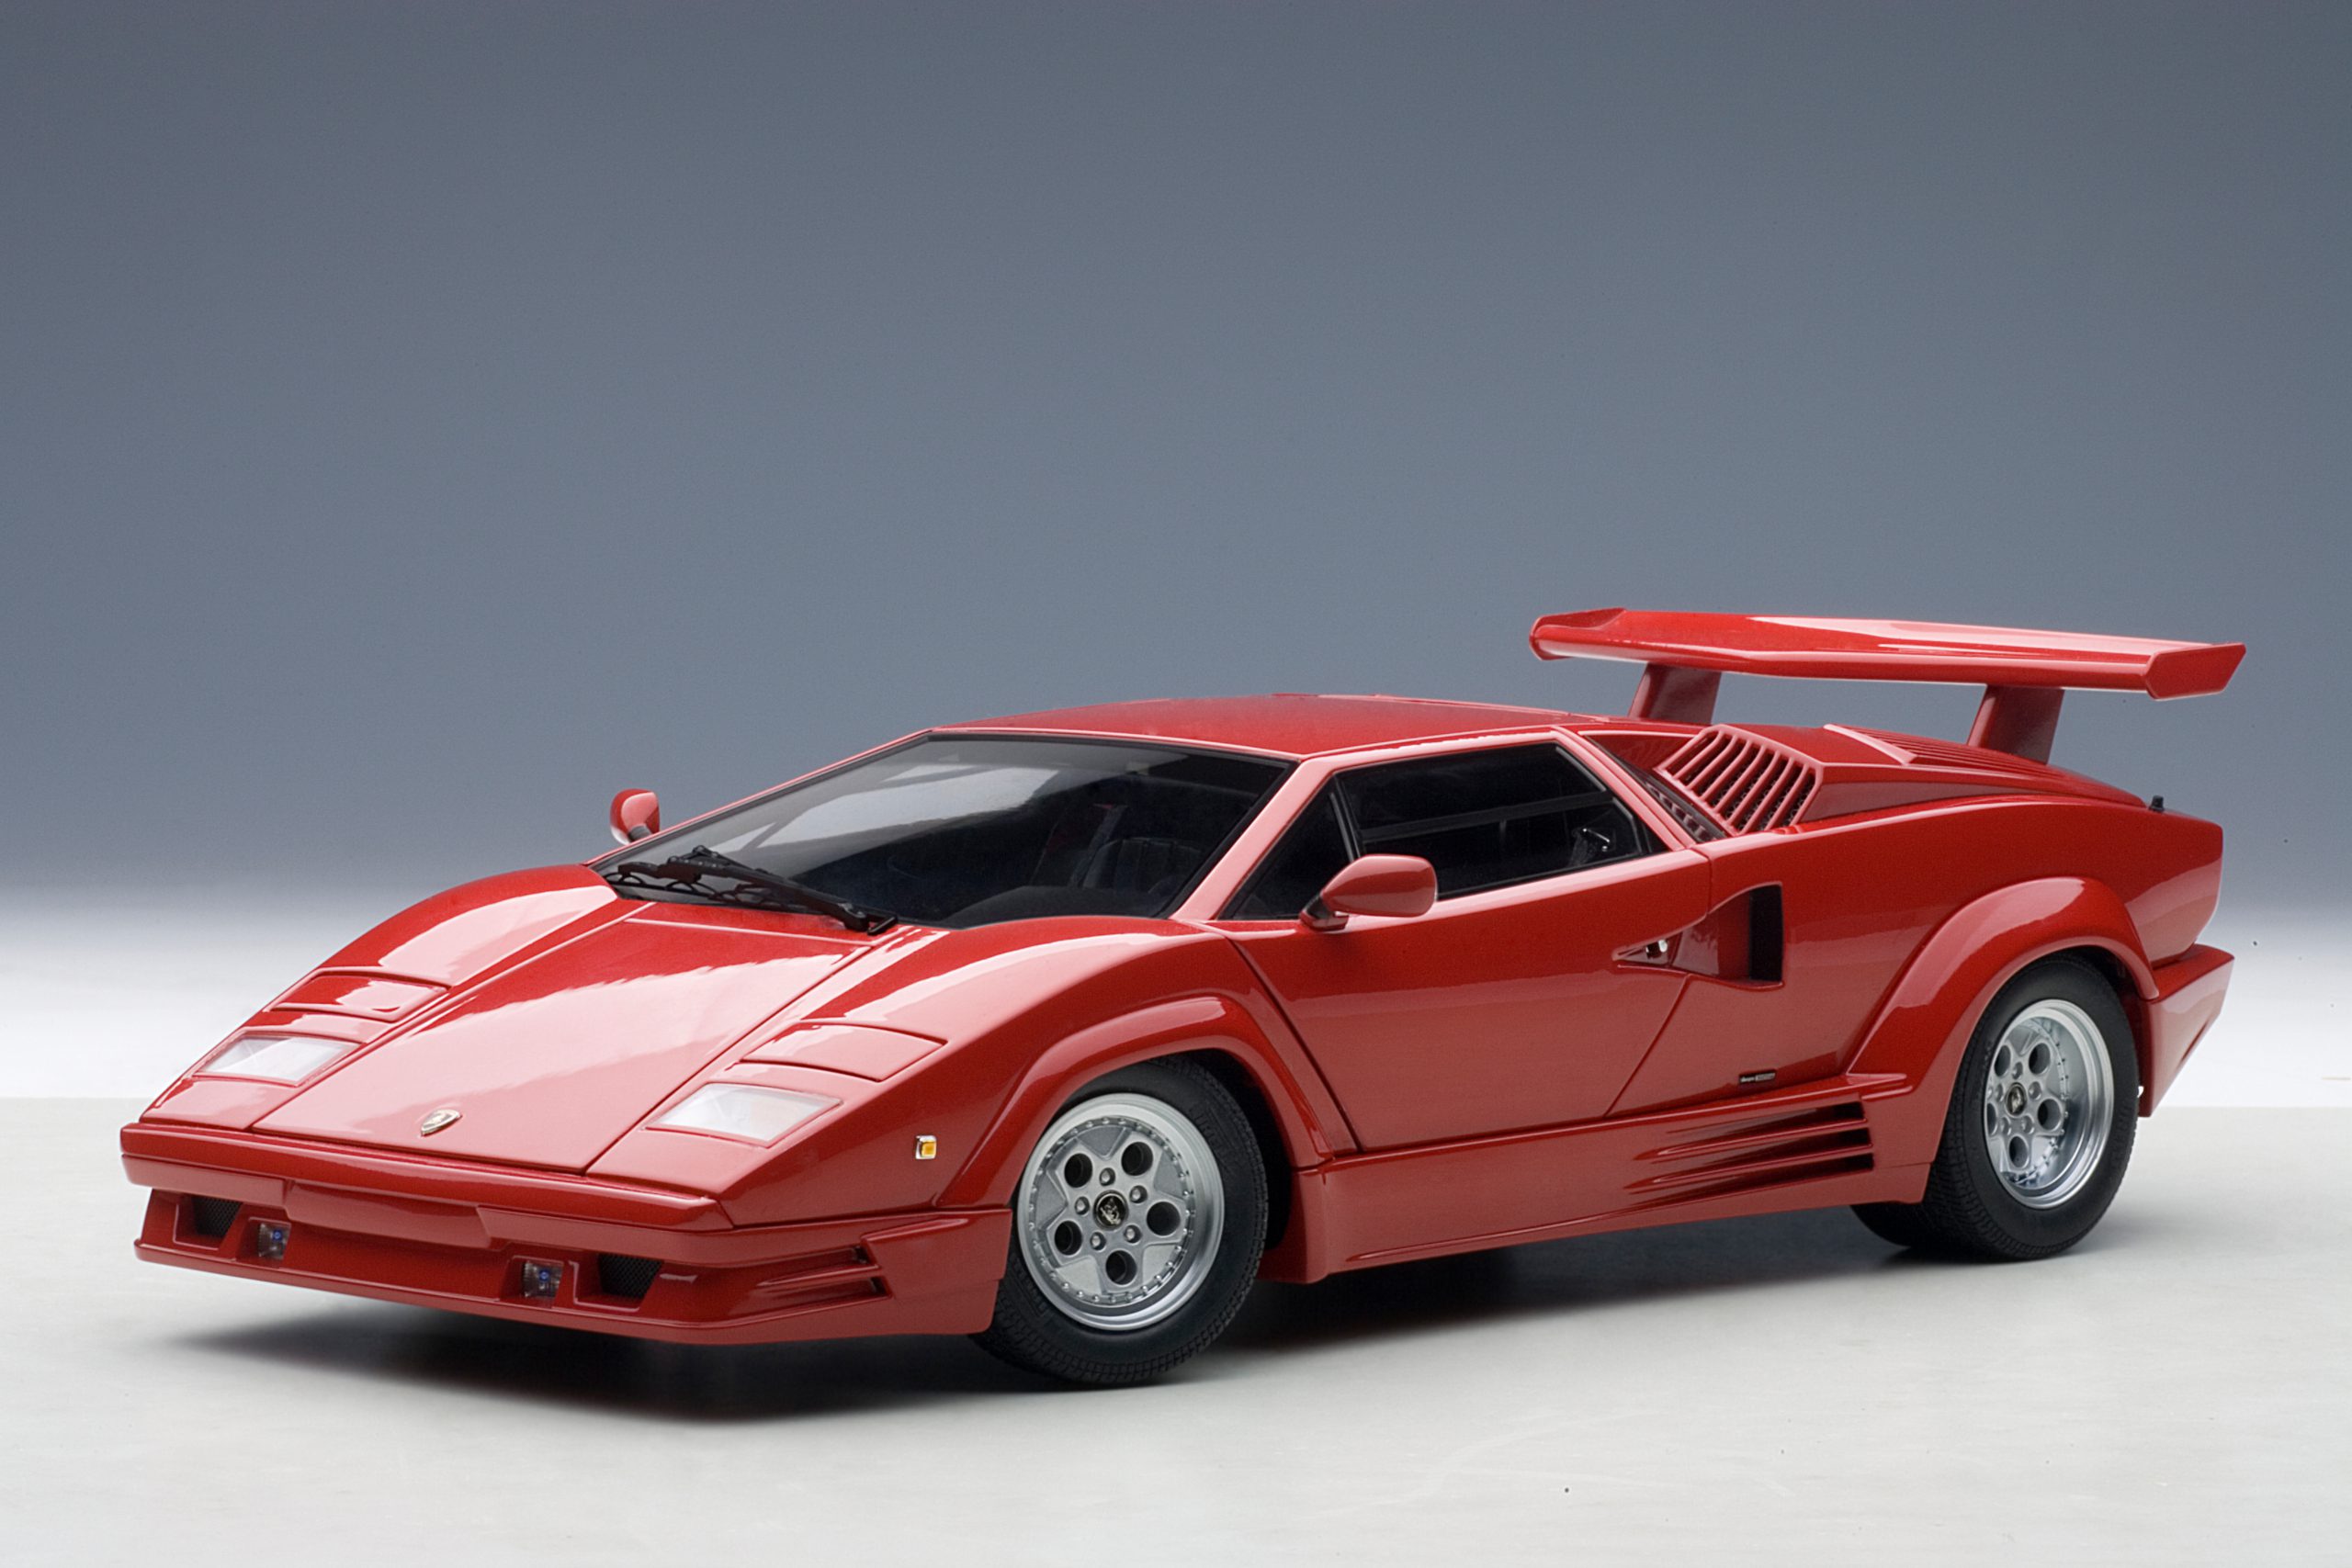 Lamborghini Countach 25th Anniversary Edition (Red) | AUTOart